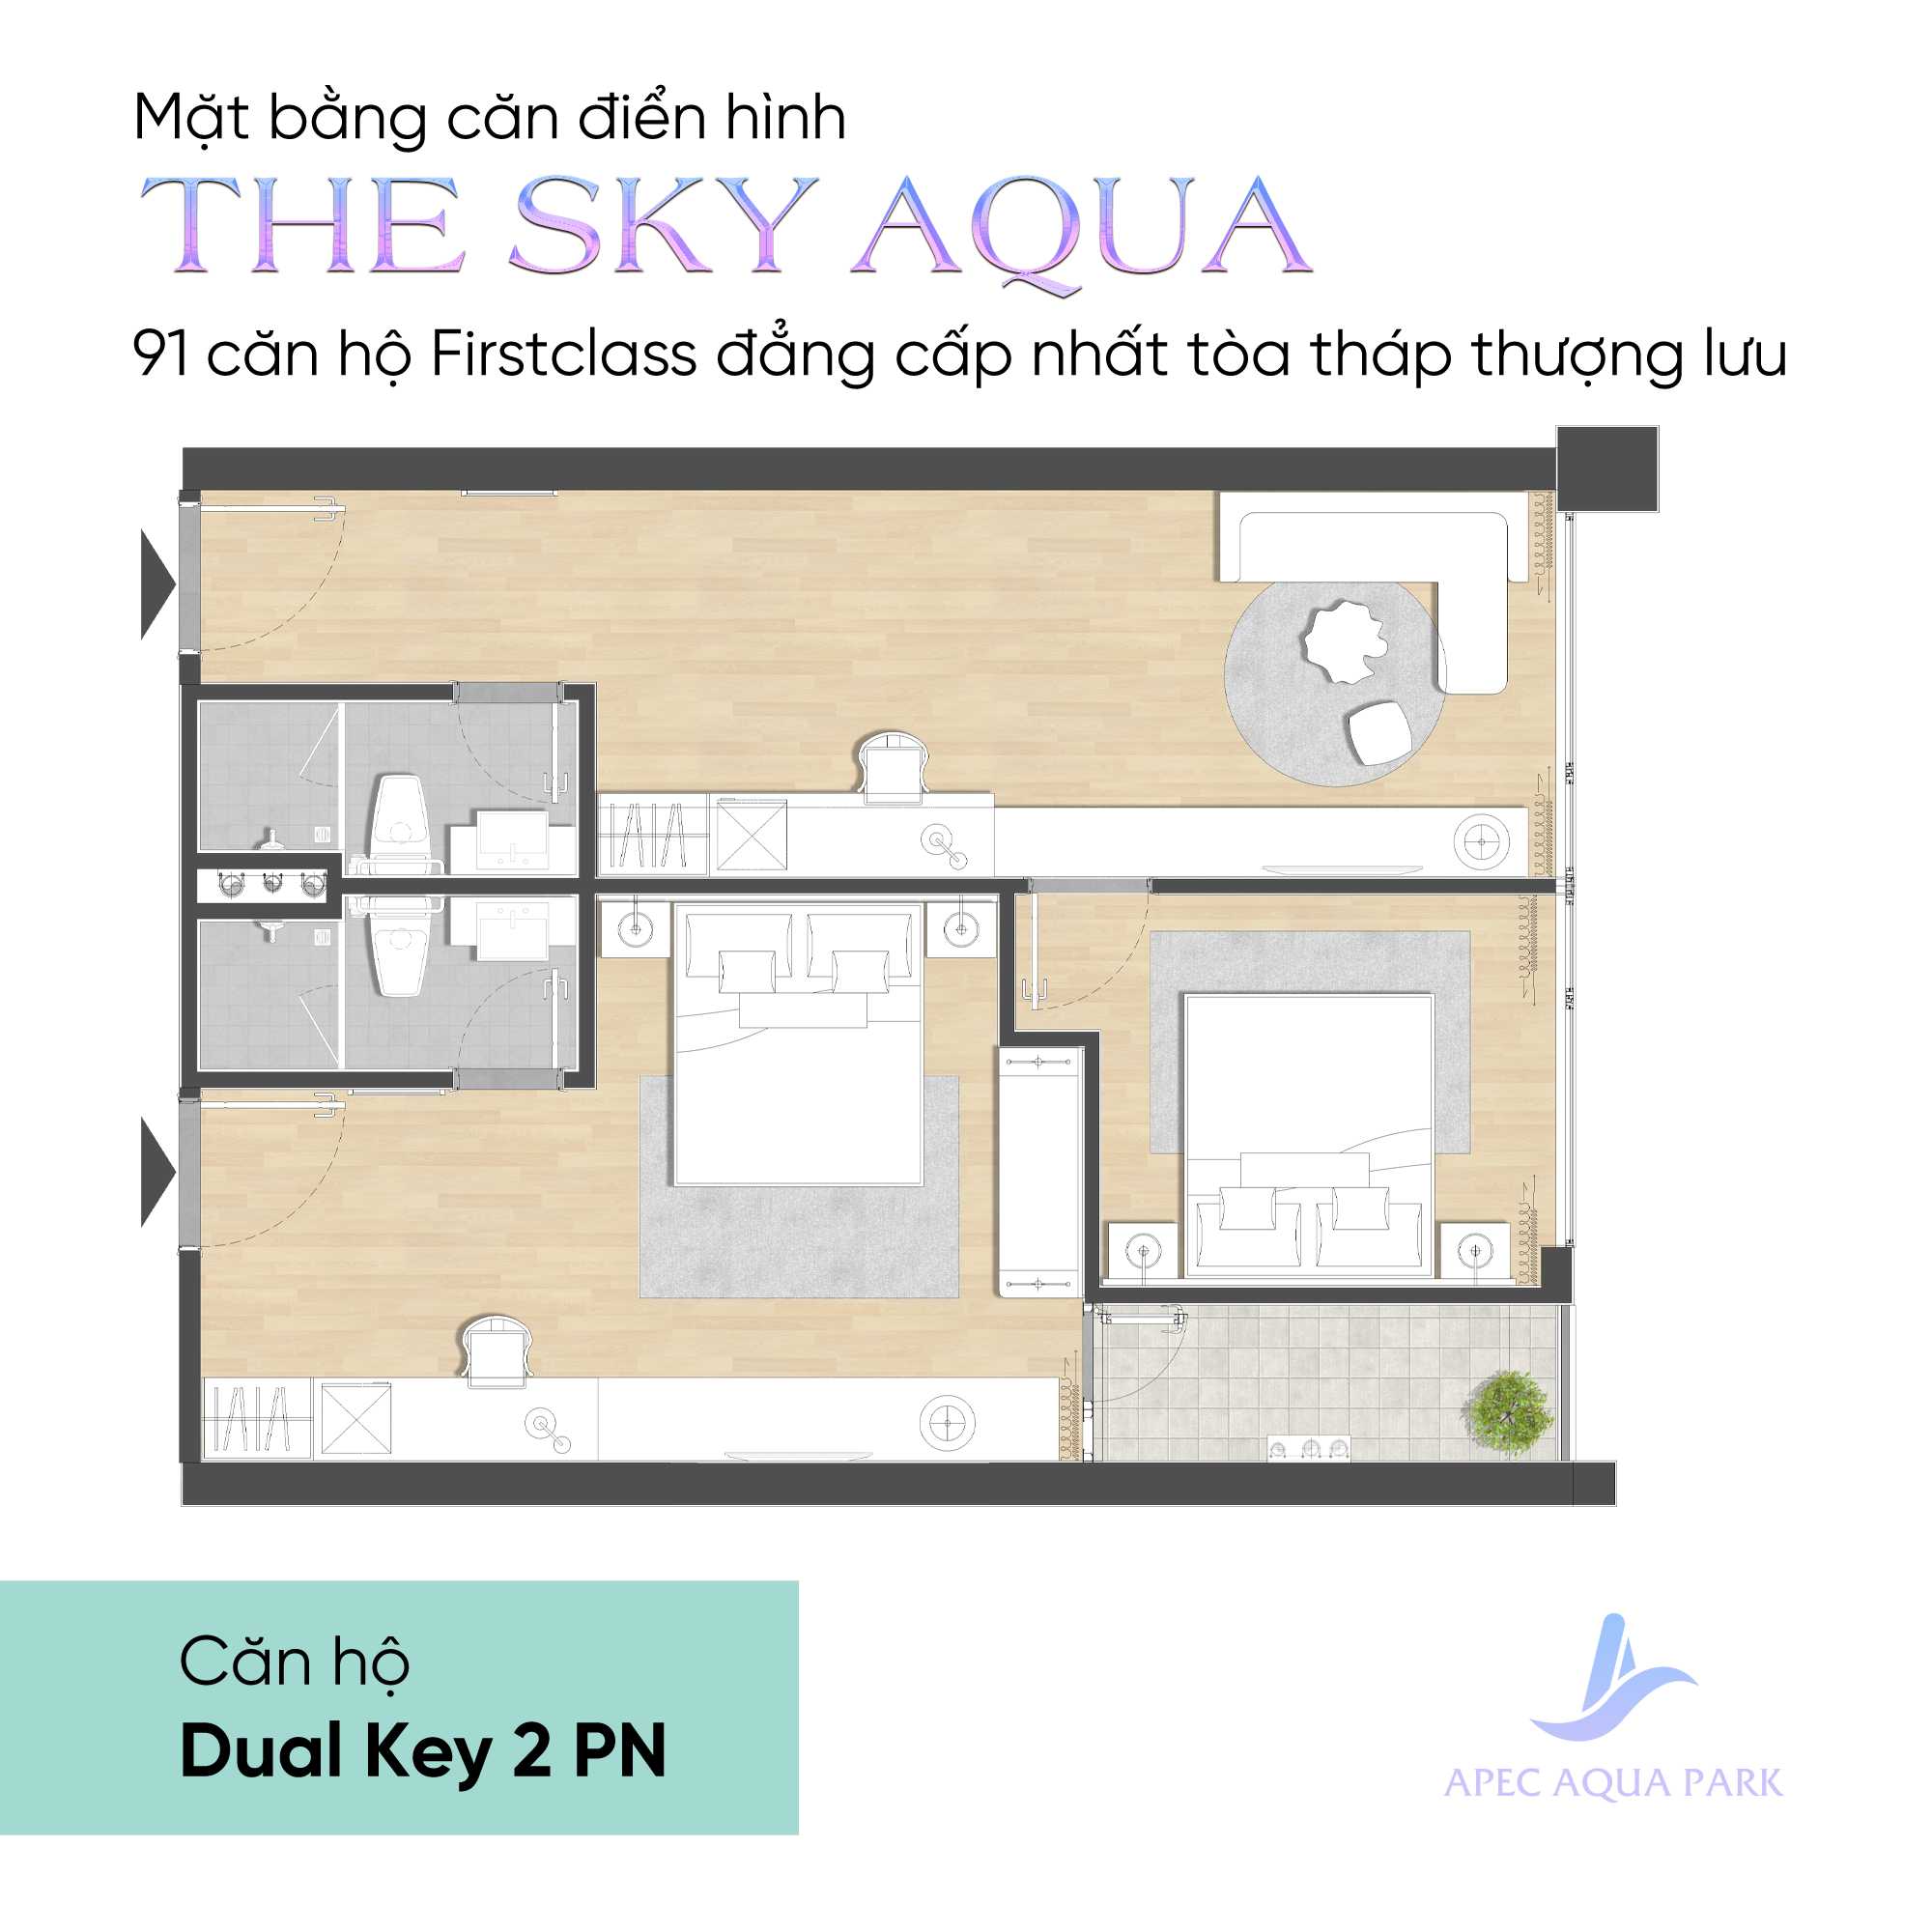 Cần bán Căn hộ chung cư dự án Aqua Park Bắc Giang, Diện tích 44m², Giá 41 Triệu/m² 4